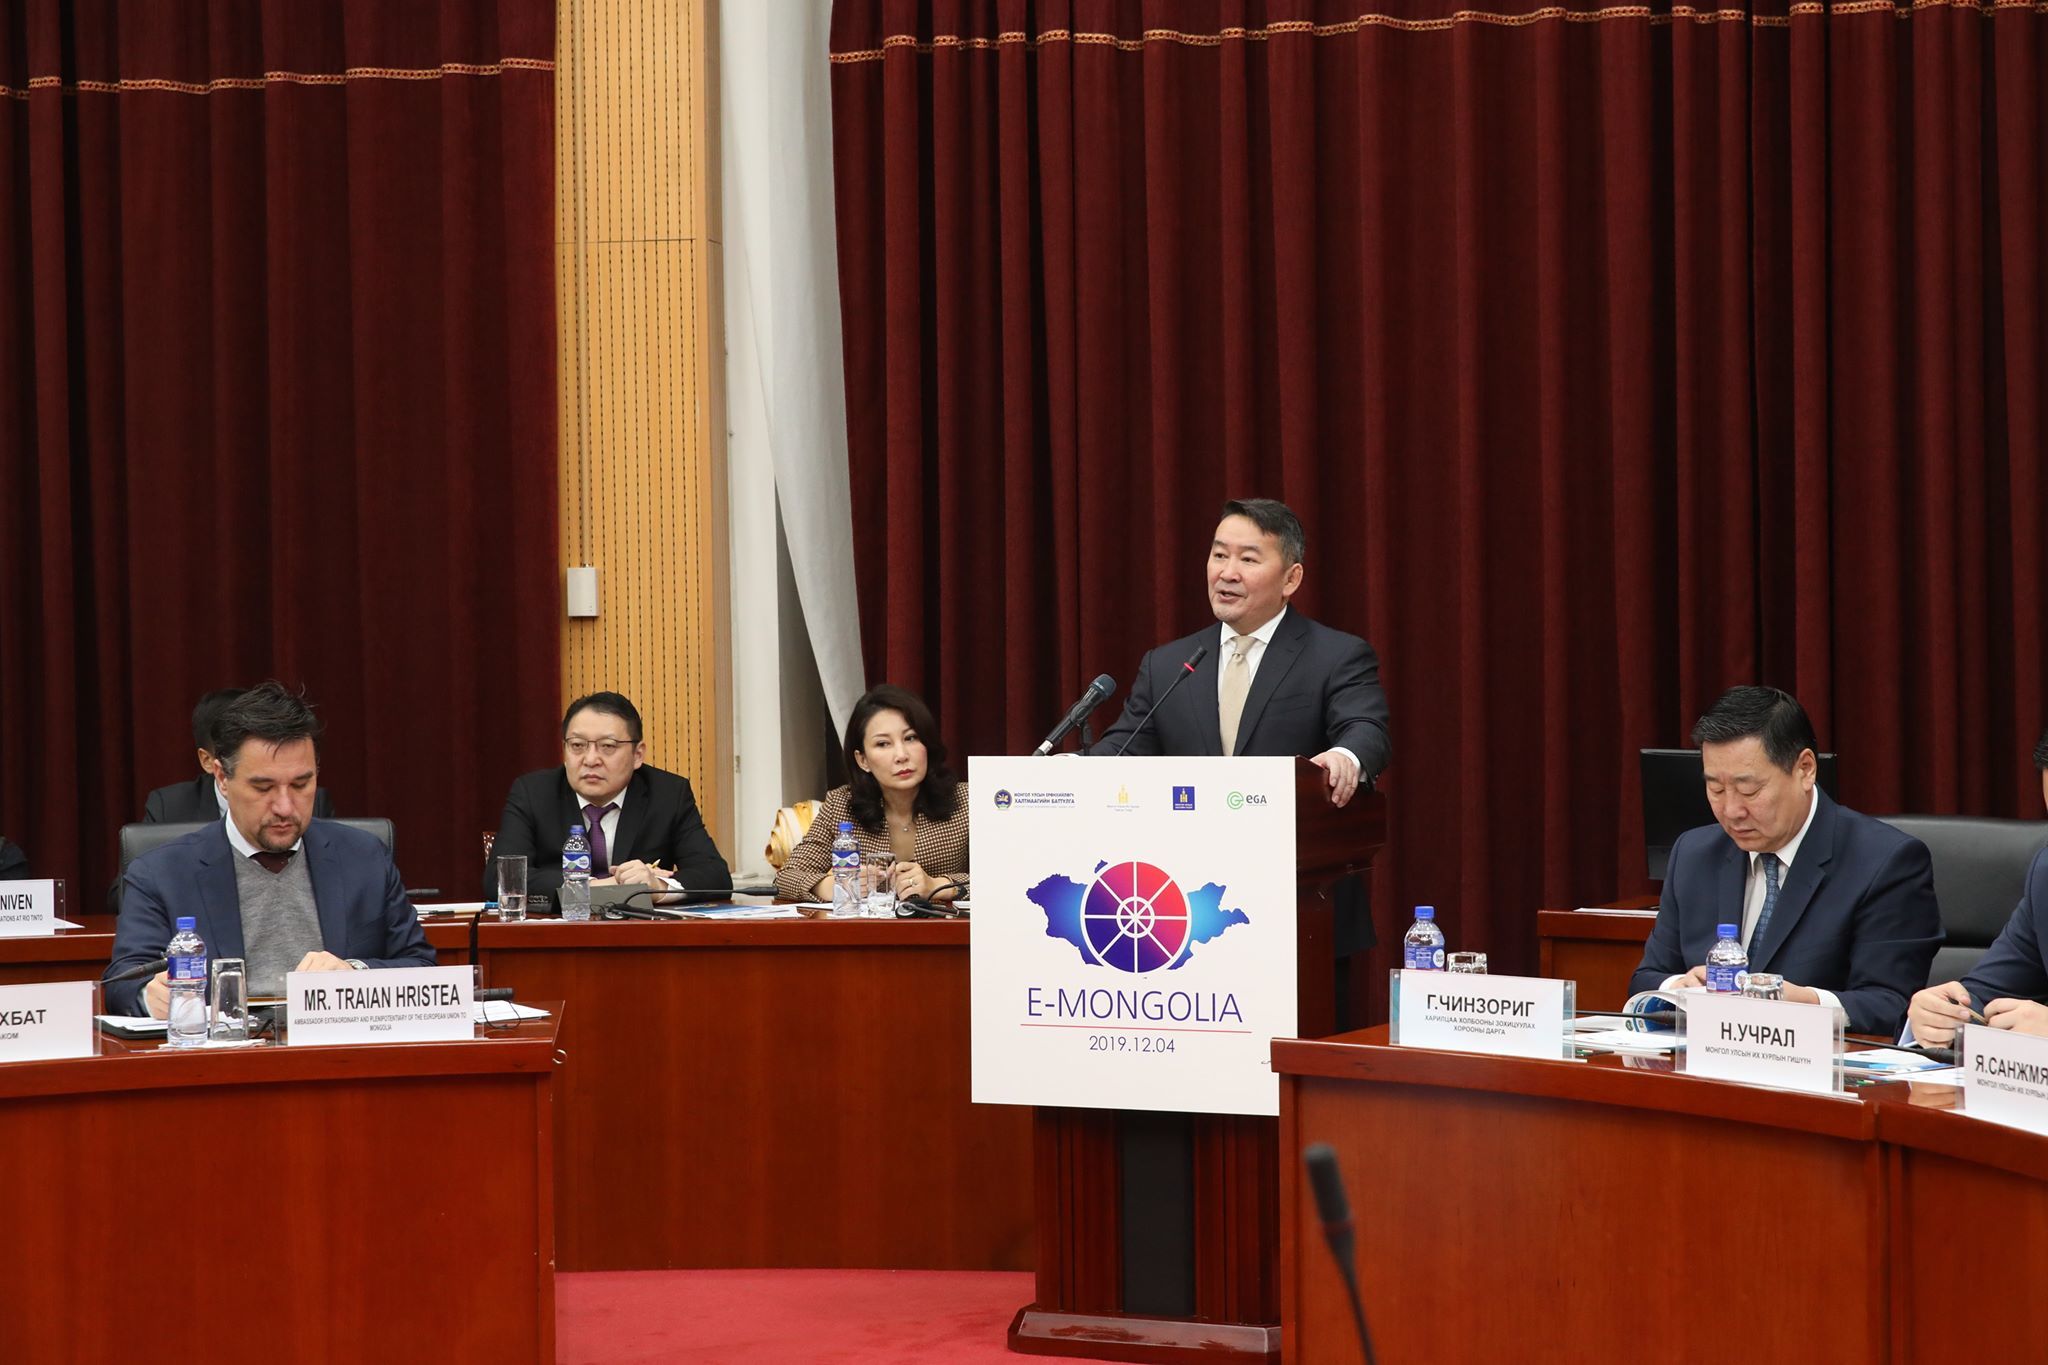 Монгол Улсын Ерөнхийлөгч Х.Баттулга: Бид мэдээллийн технологийг нийгмийн сүлжээний хэрэглээнээс өөрөөр дорвитой ашиглахгүй байна.